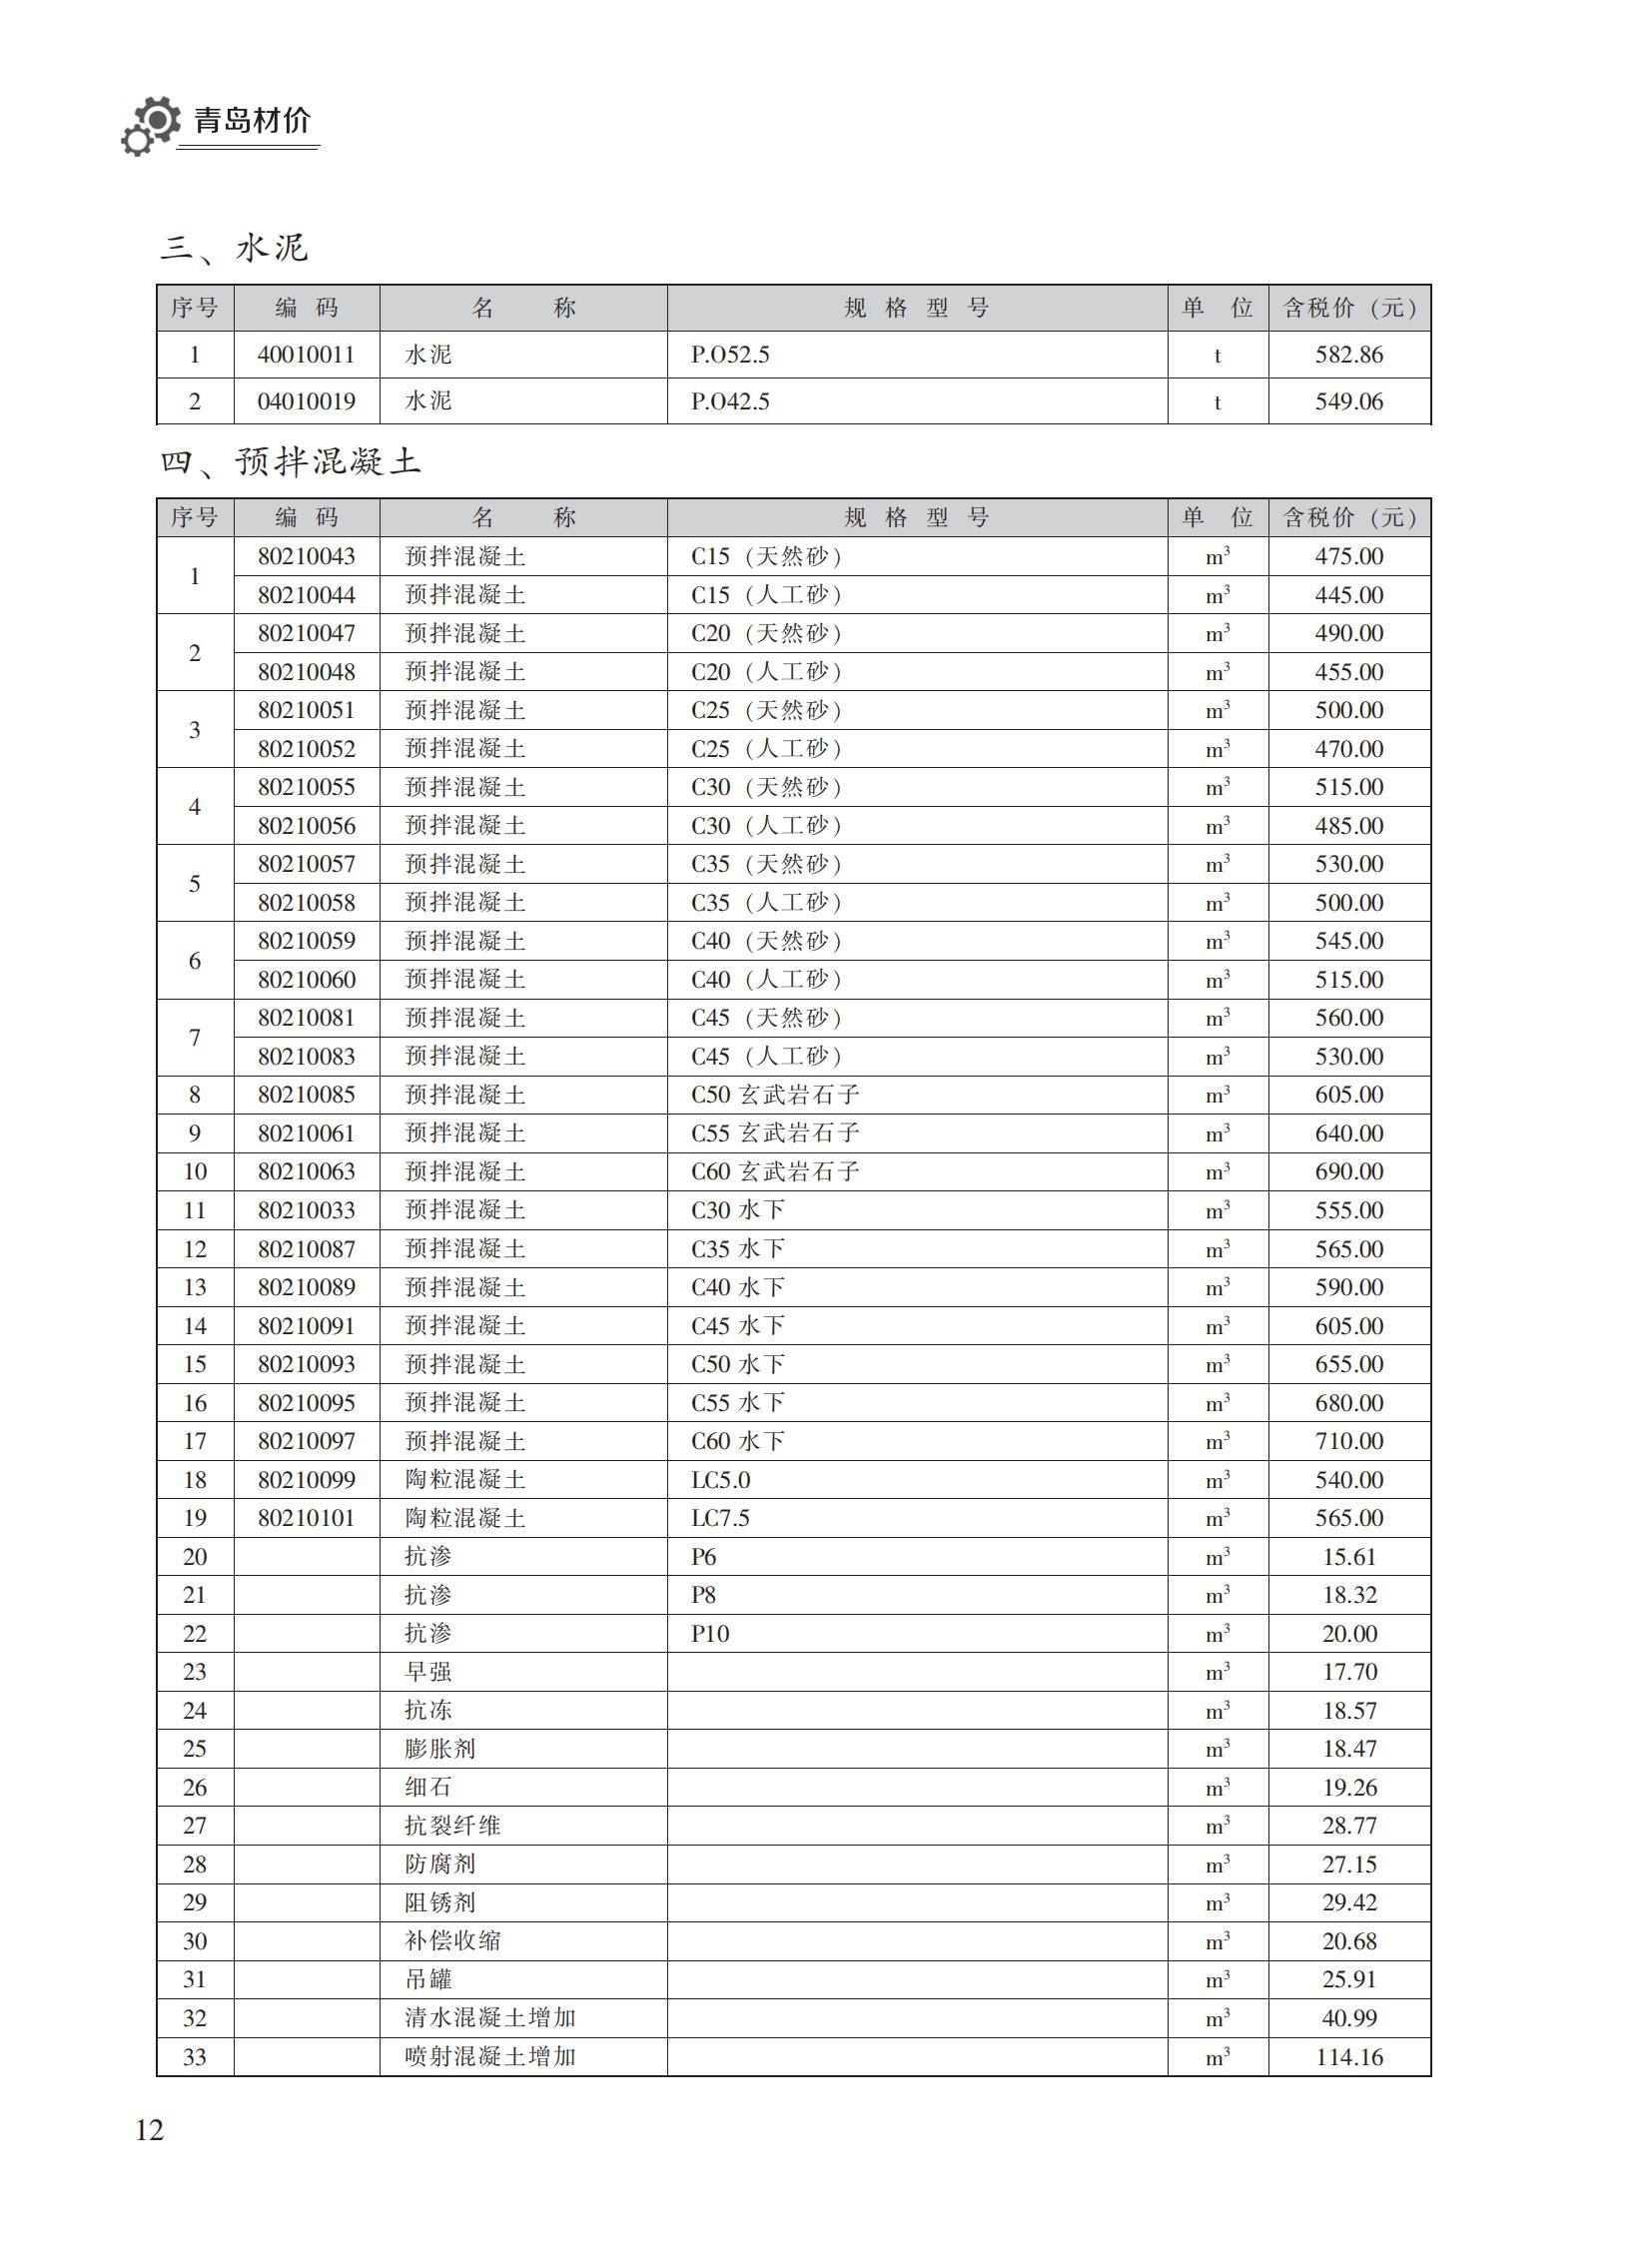 2023年1月青岛市建设工程材料价格及造价指数_11.jpg